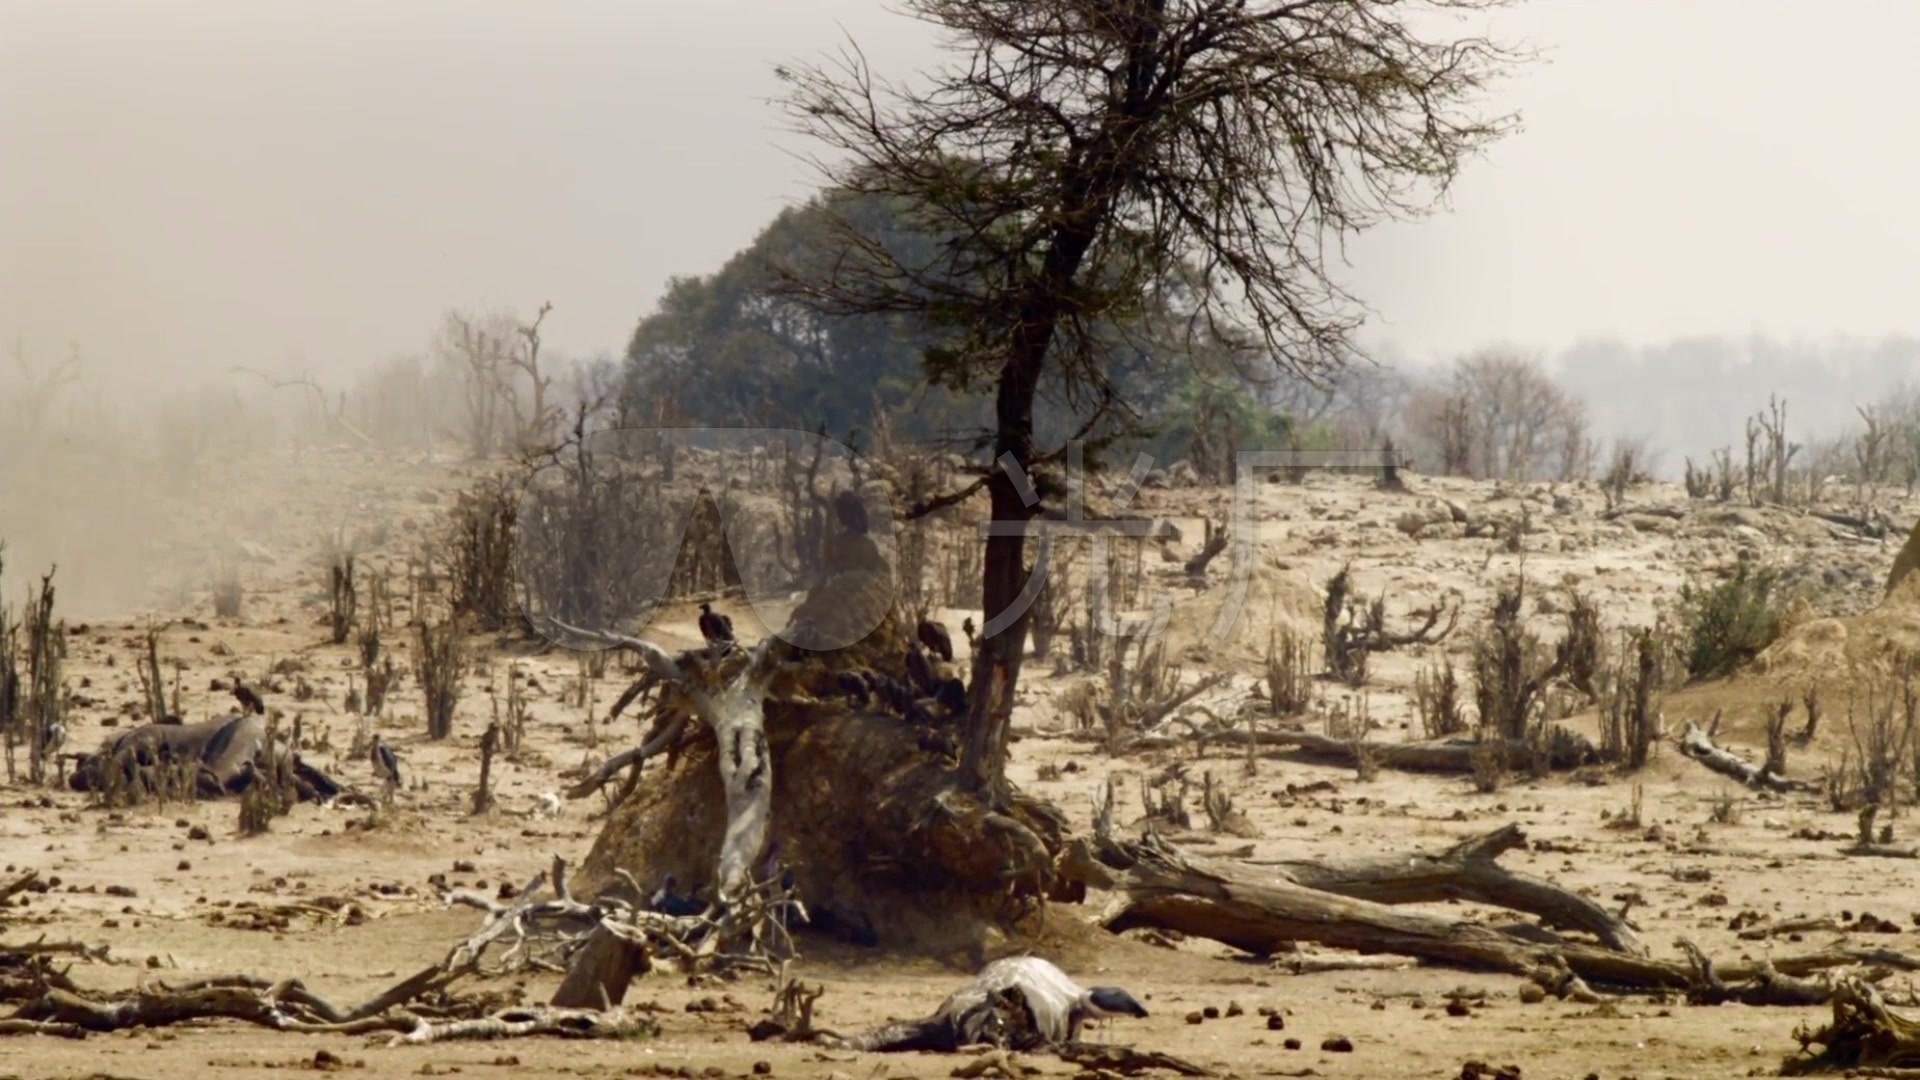 视频素材 实拍视频 自然风景 高清实拍环境遭破坏树木被砍河流干涸